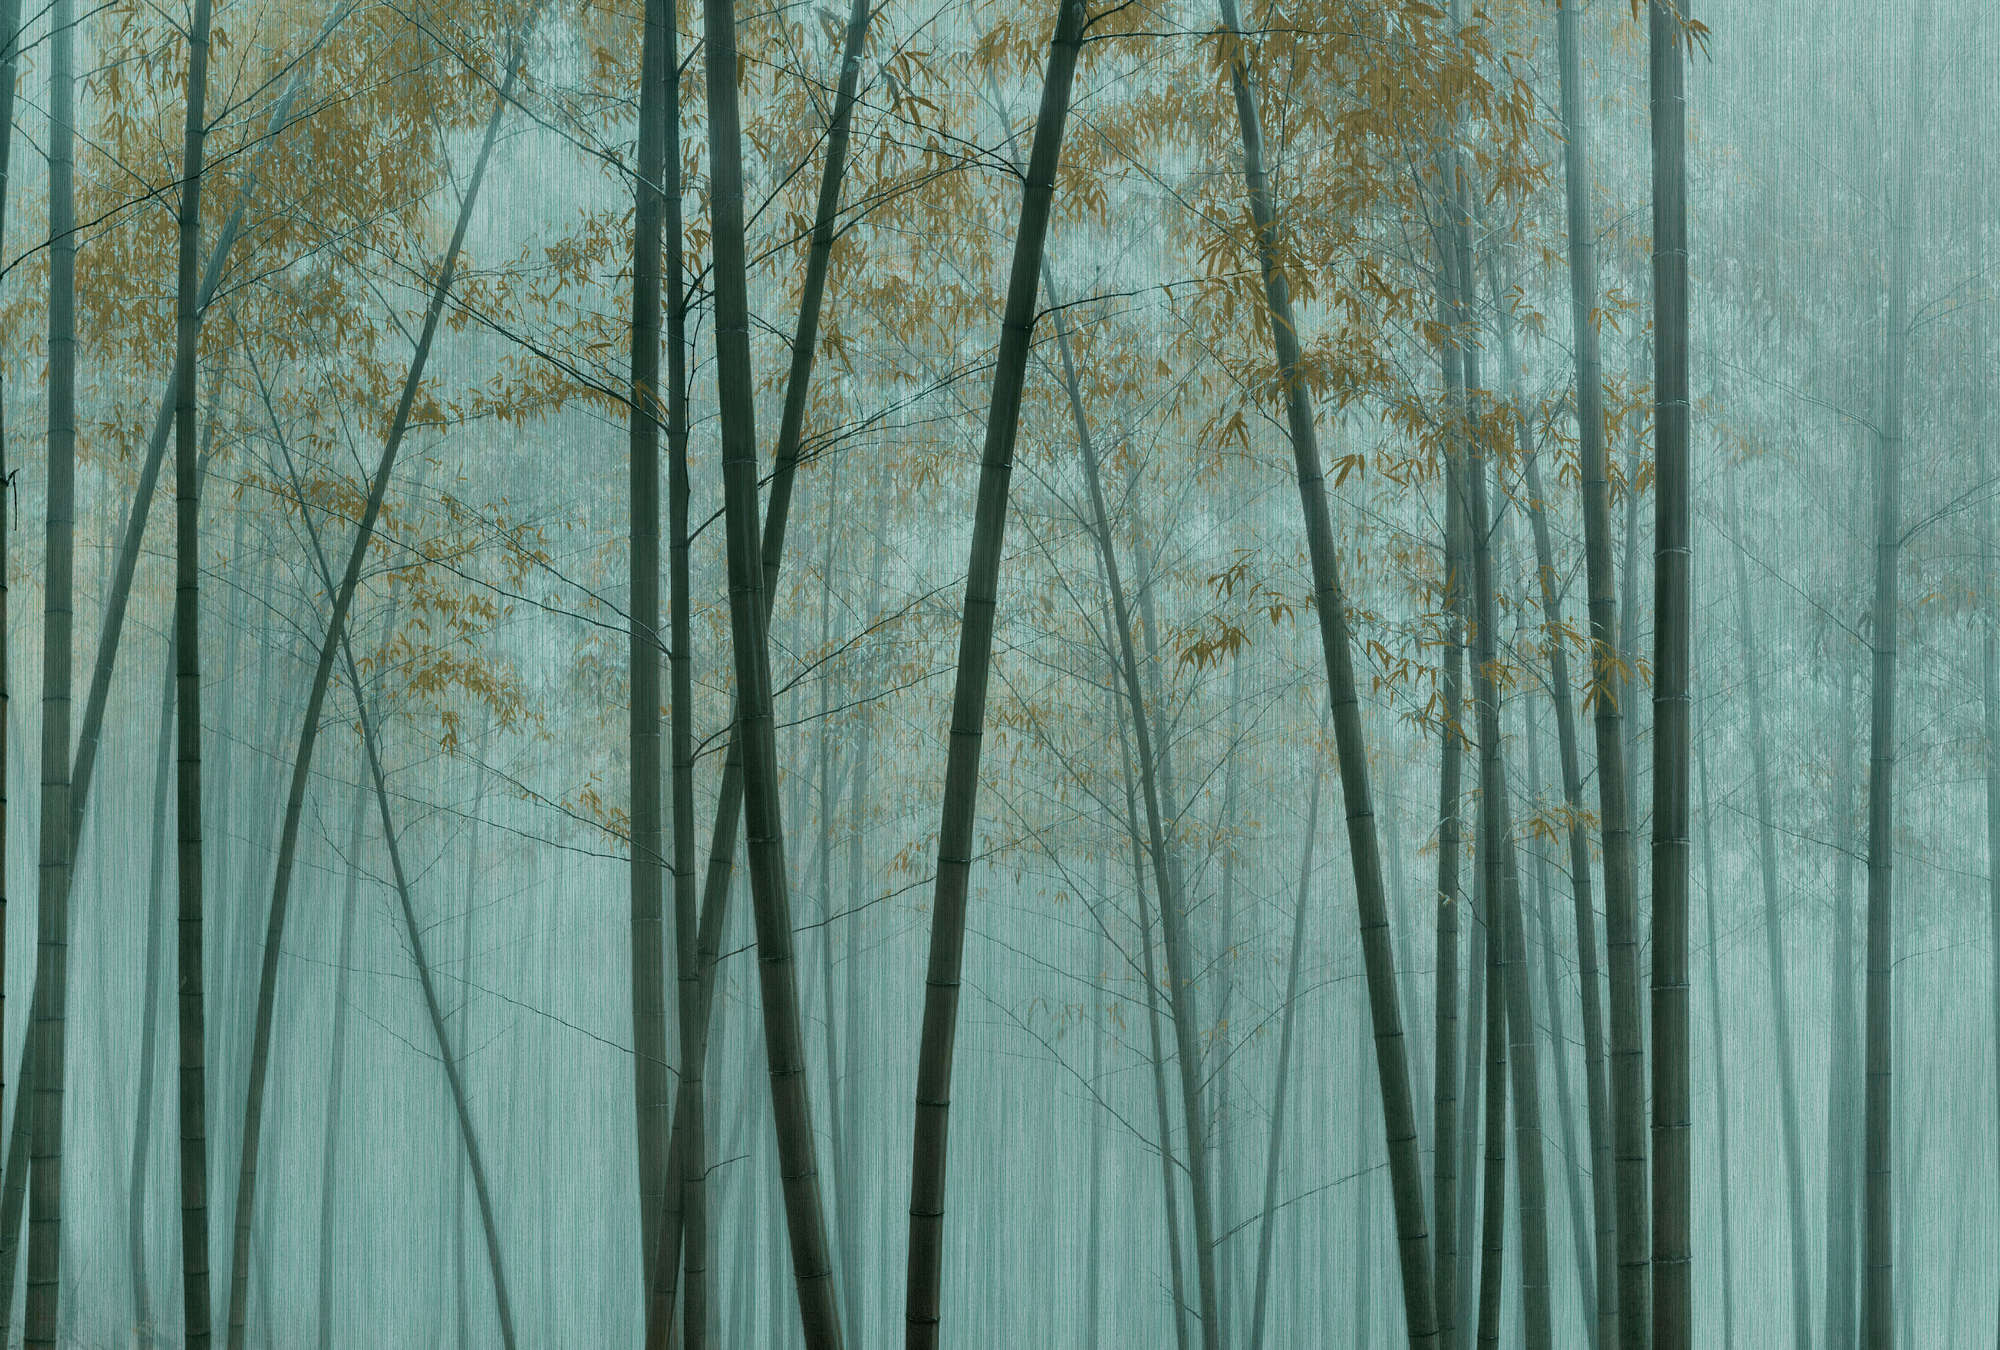             In the Bamboo 3 - Papier peint asiatique forêt de bambous
        